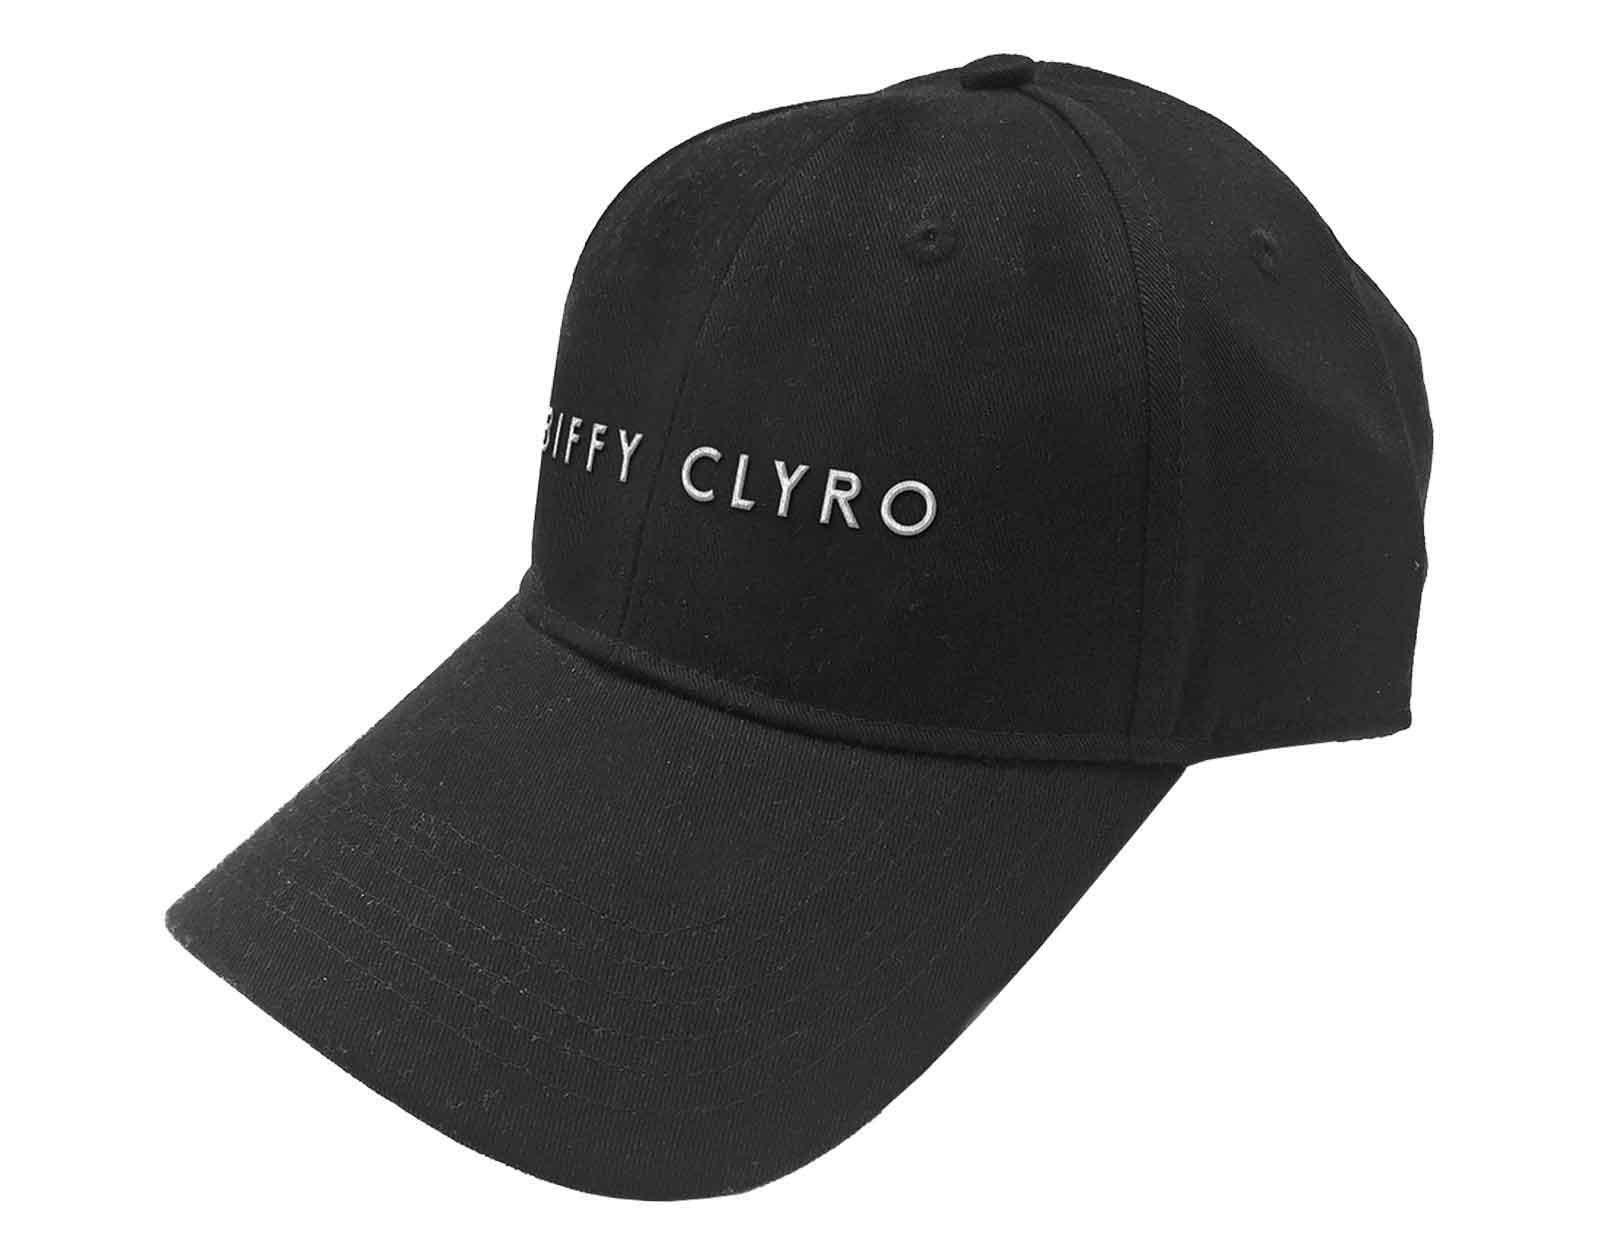 Бейсбольная кепка с текстовым ремешком и логотипом Biffy Clyro, черный